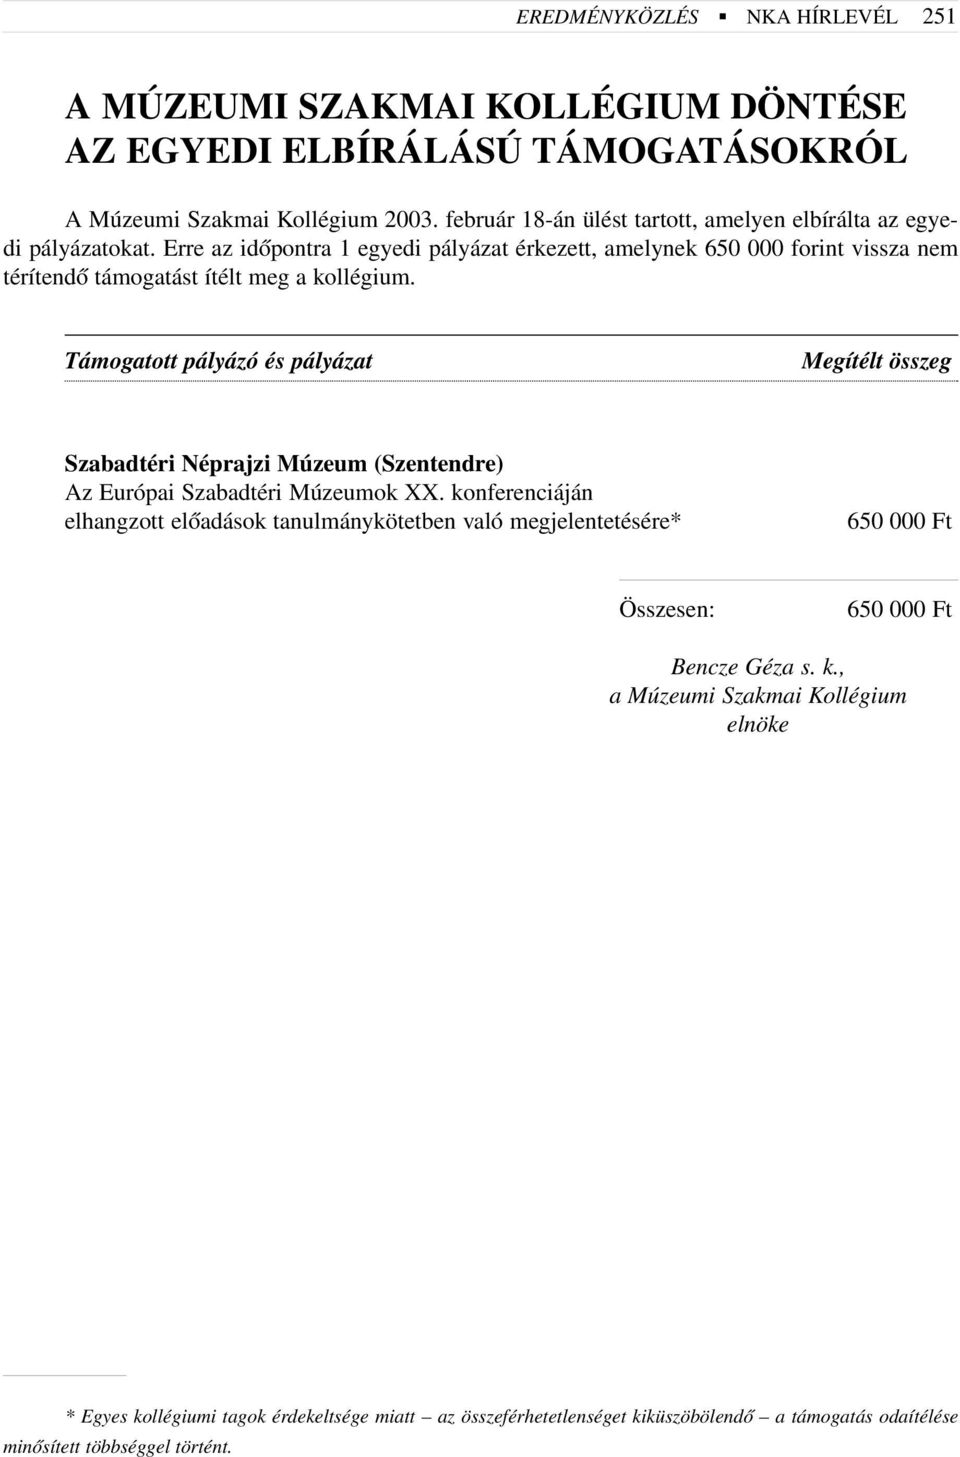 Erre az idõpontra 1 egyedi pályázat érkezett, amelynek 650 000 forint vissza nem térítendõ támogatást ítélt meg a kollégium.